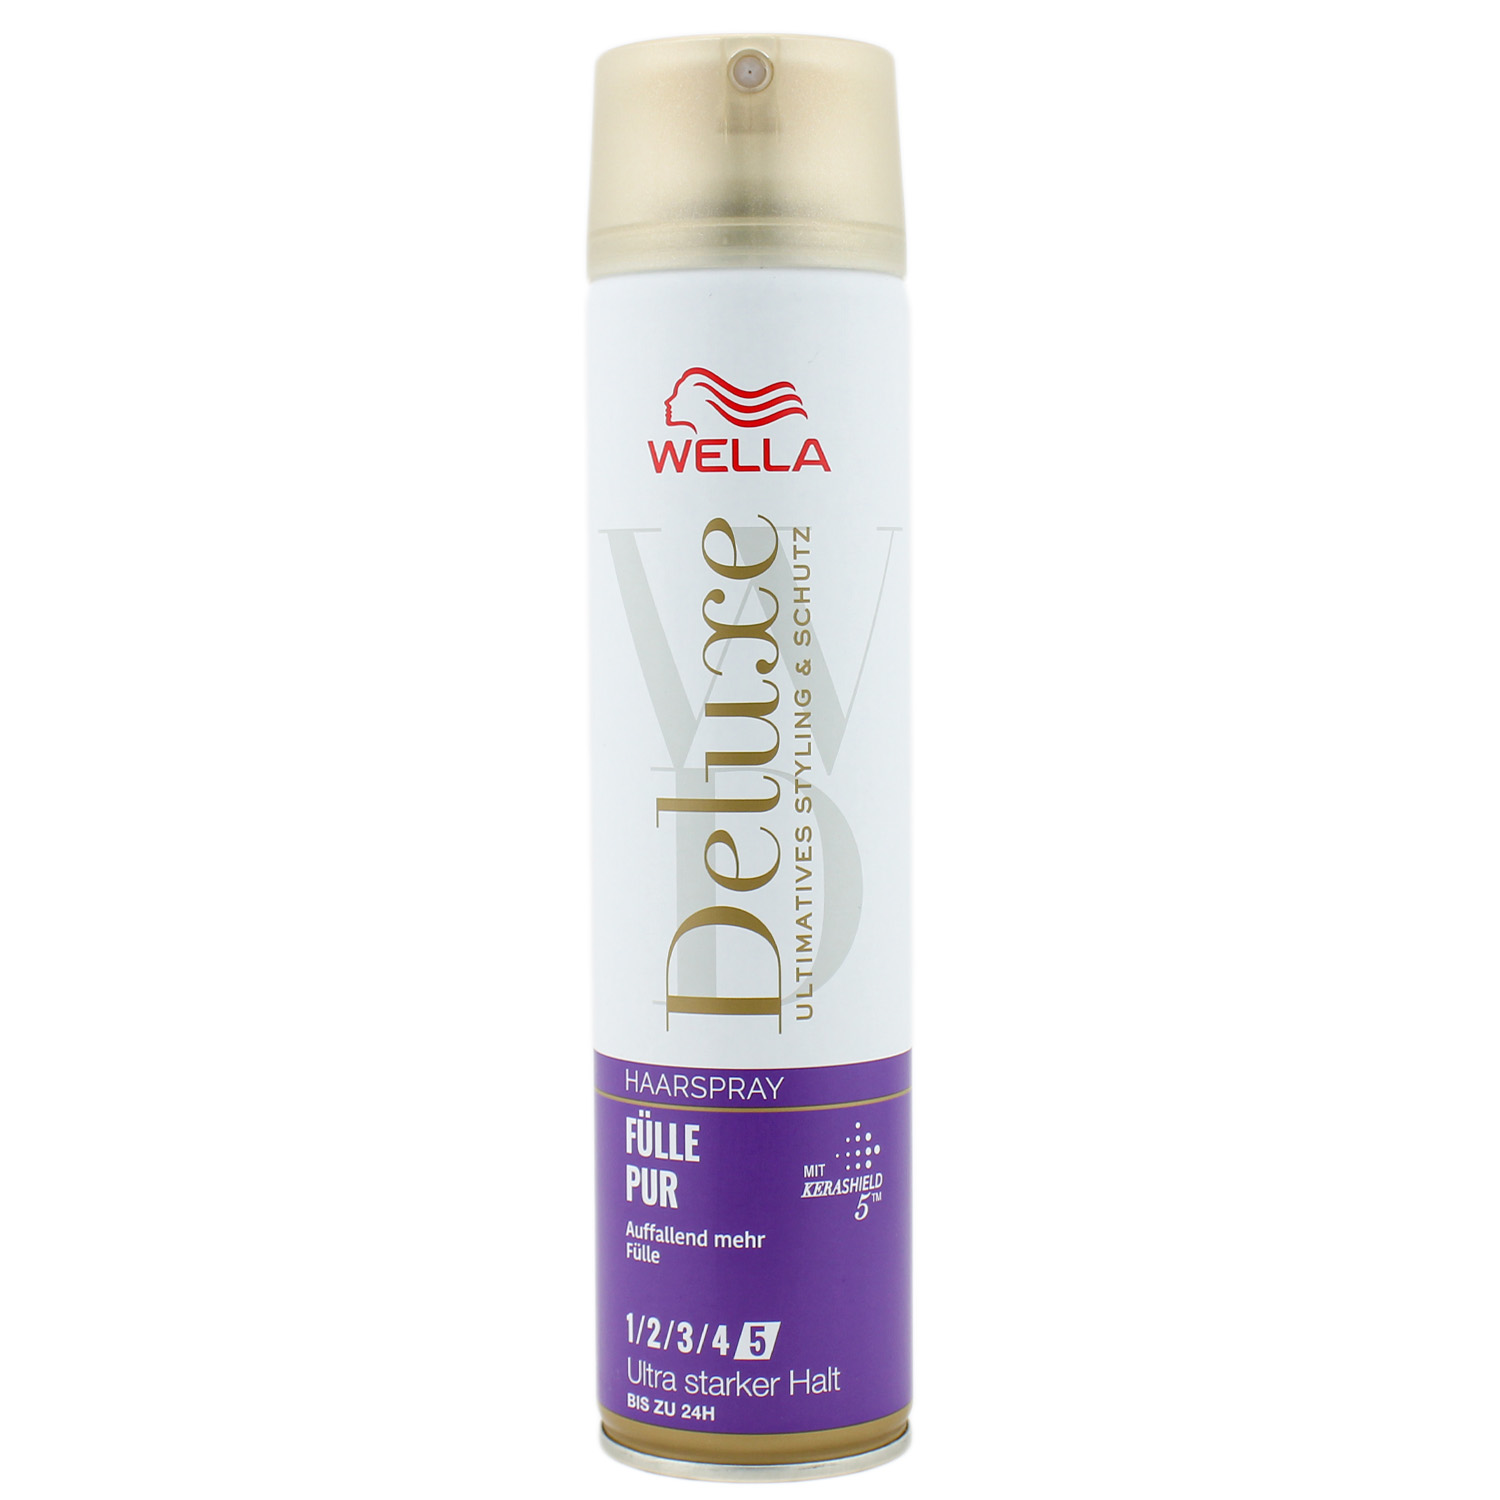 Wella Deluxe Fülle Pur Haarspray mit ultra starkem Halt 200ml